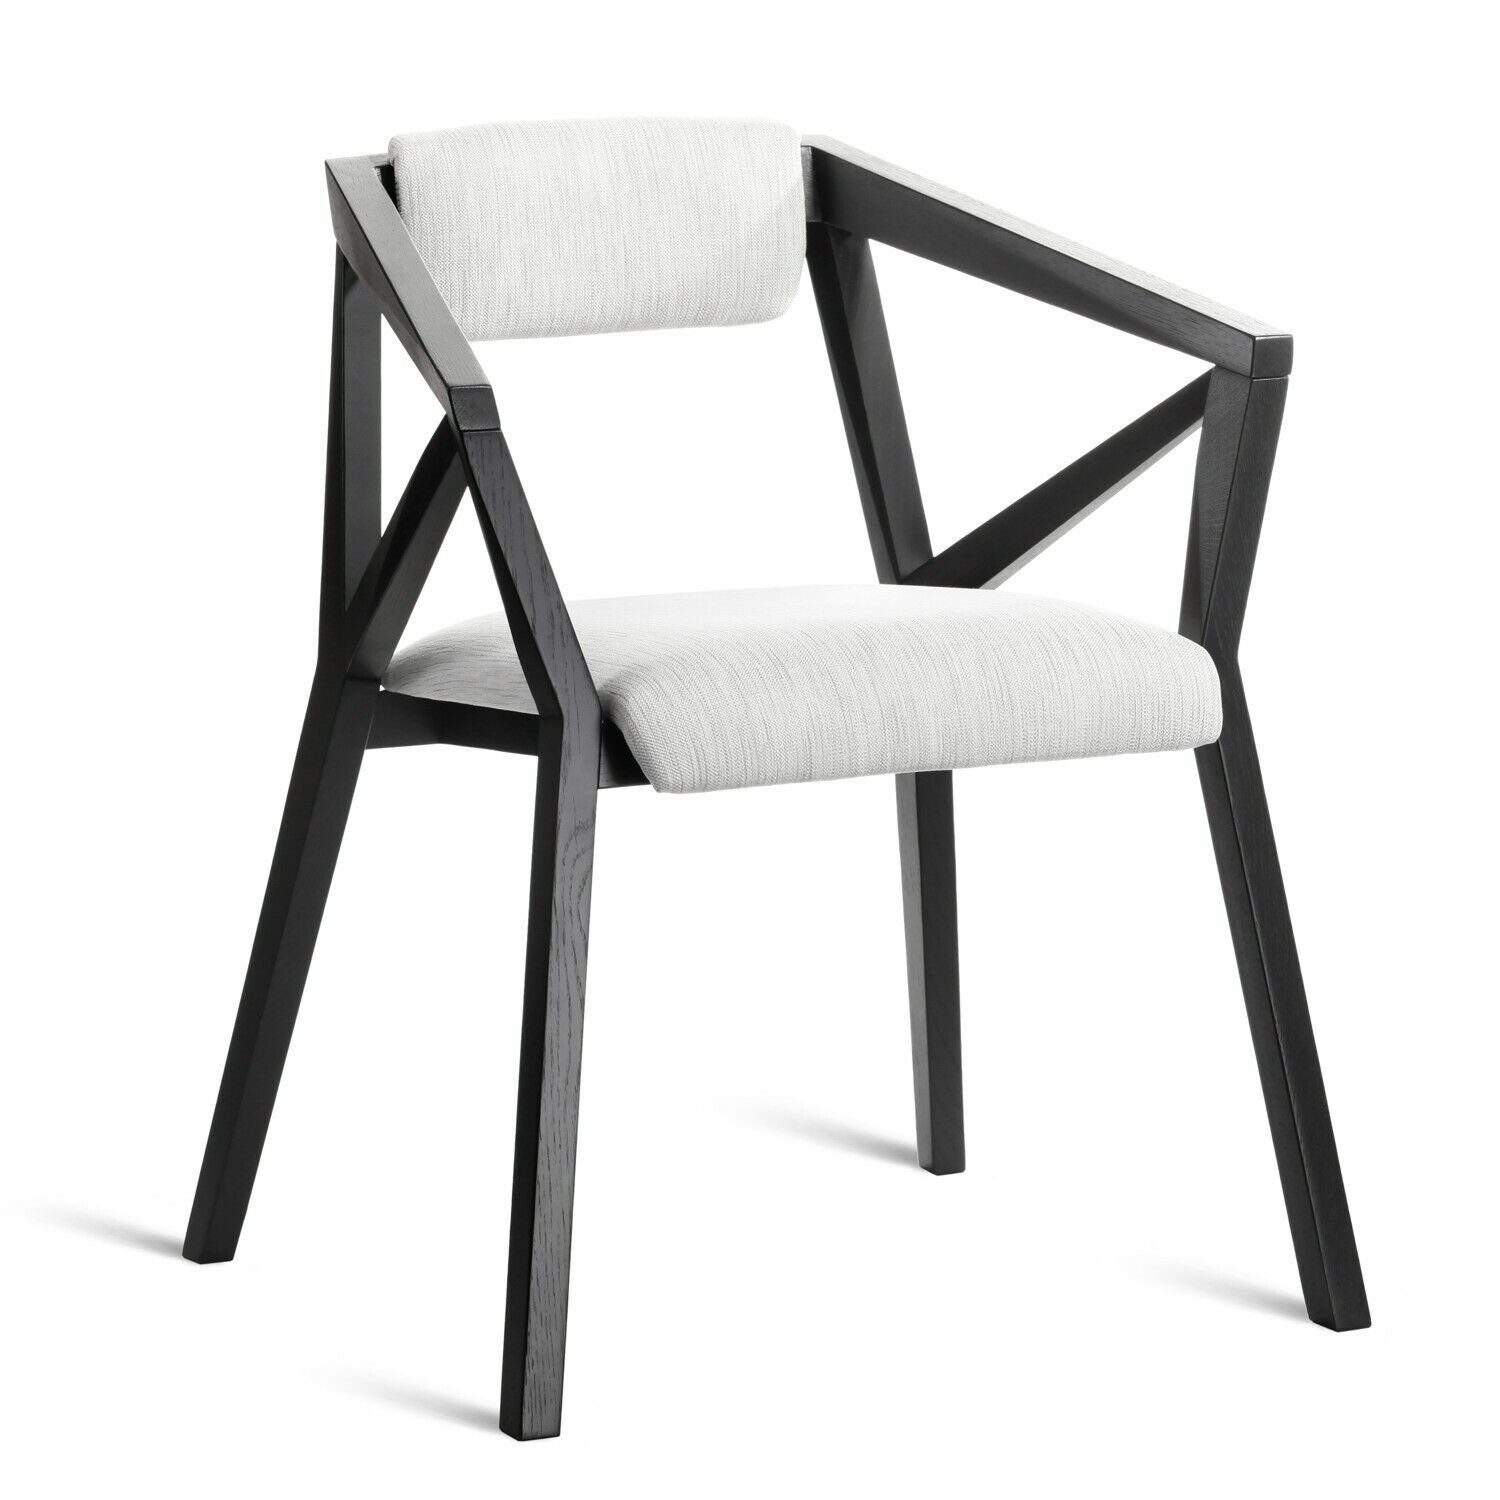 Lehnstuhl Sessel Stoff Europa in Club Holz Luxus Stuhl Made Moderne Stuhl Stühle JVmoebel Sofort,